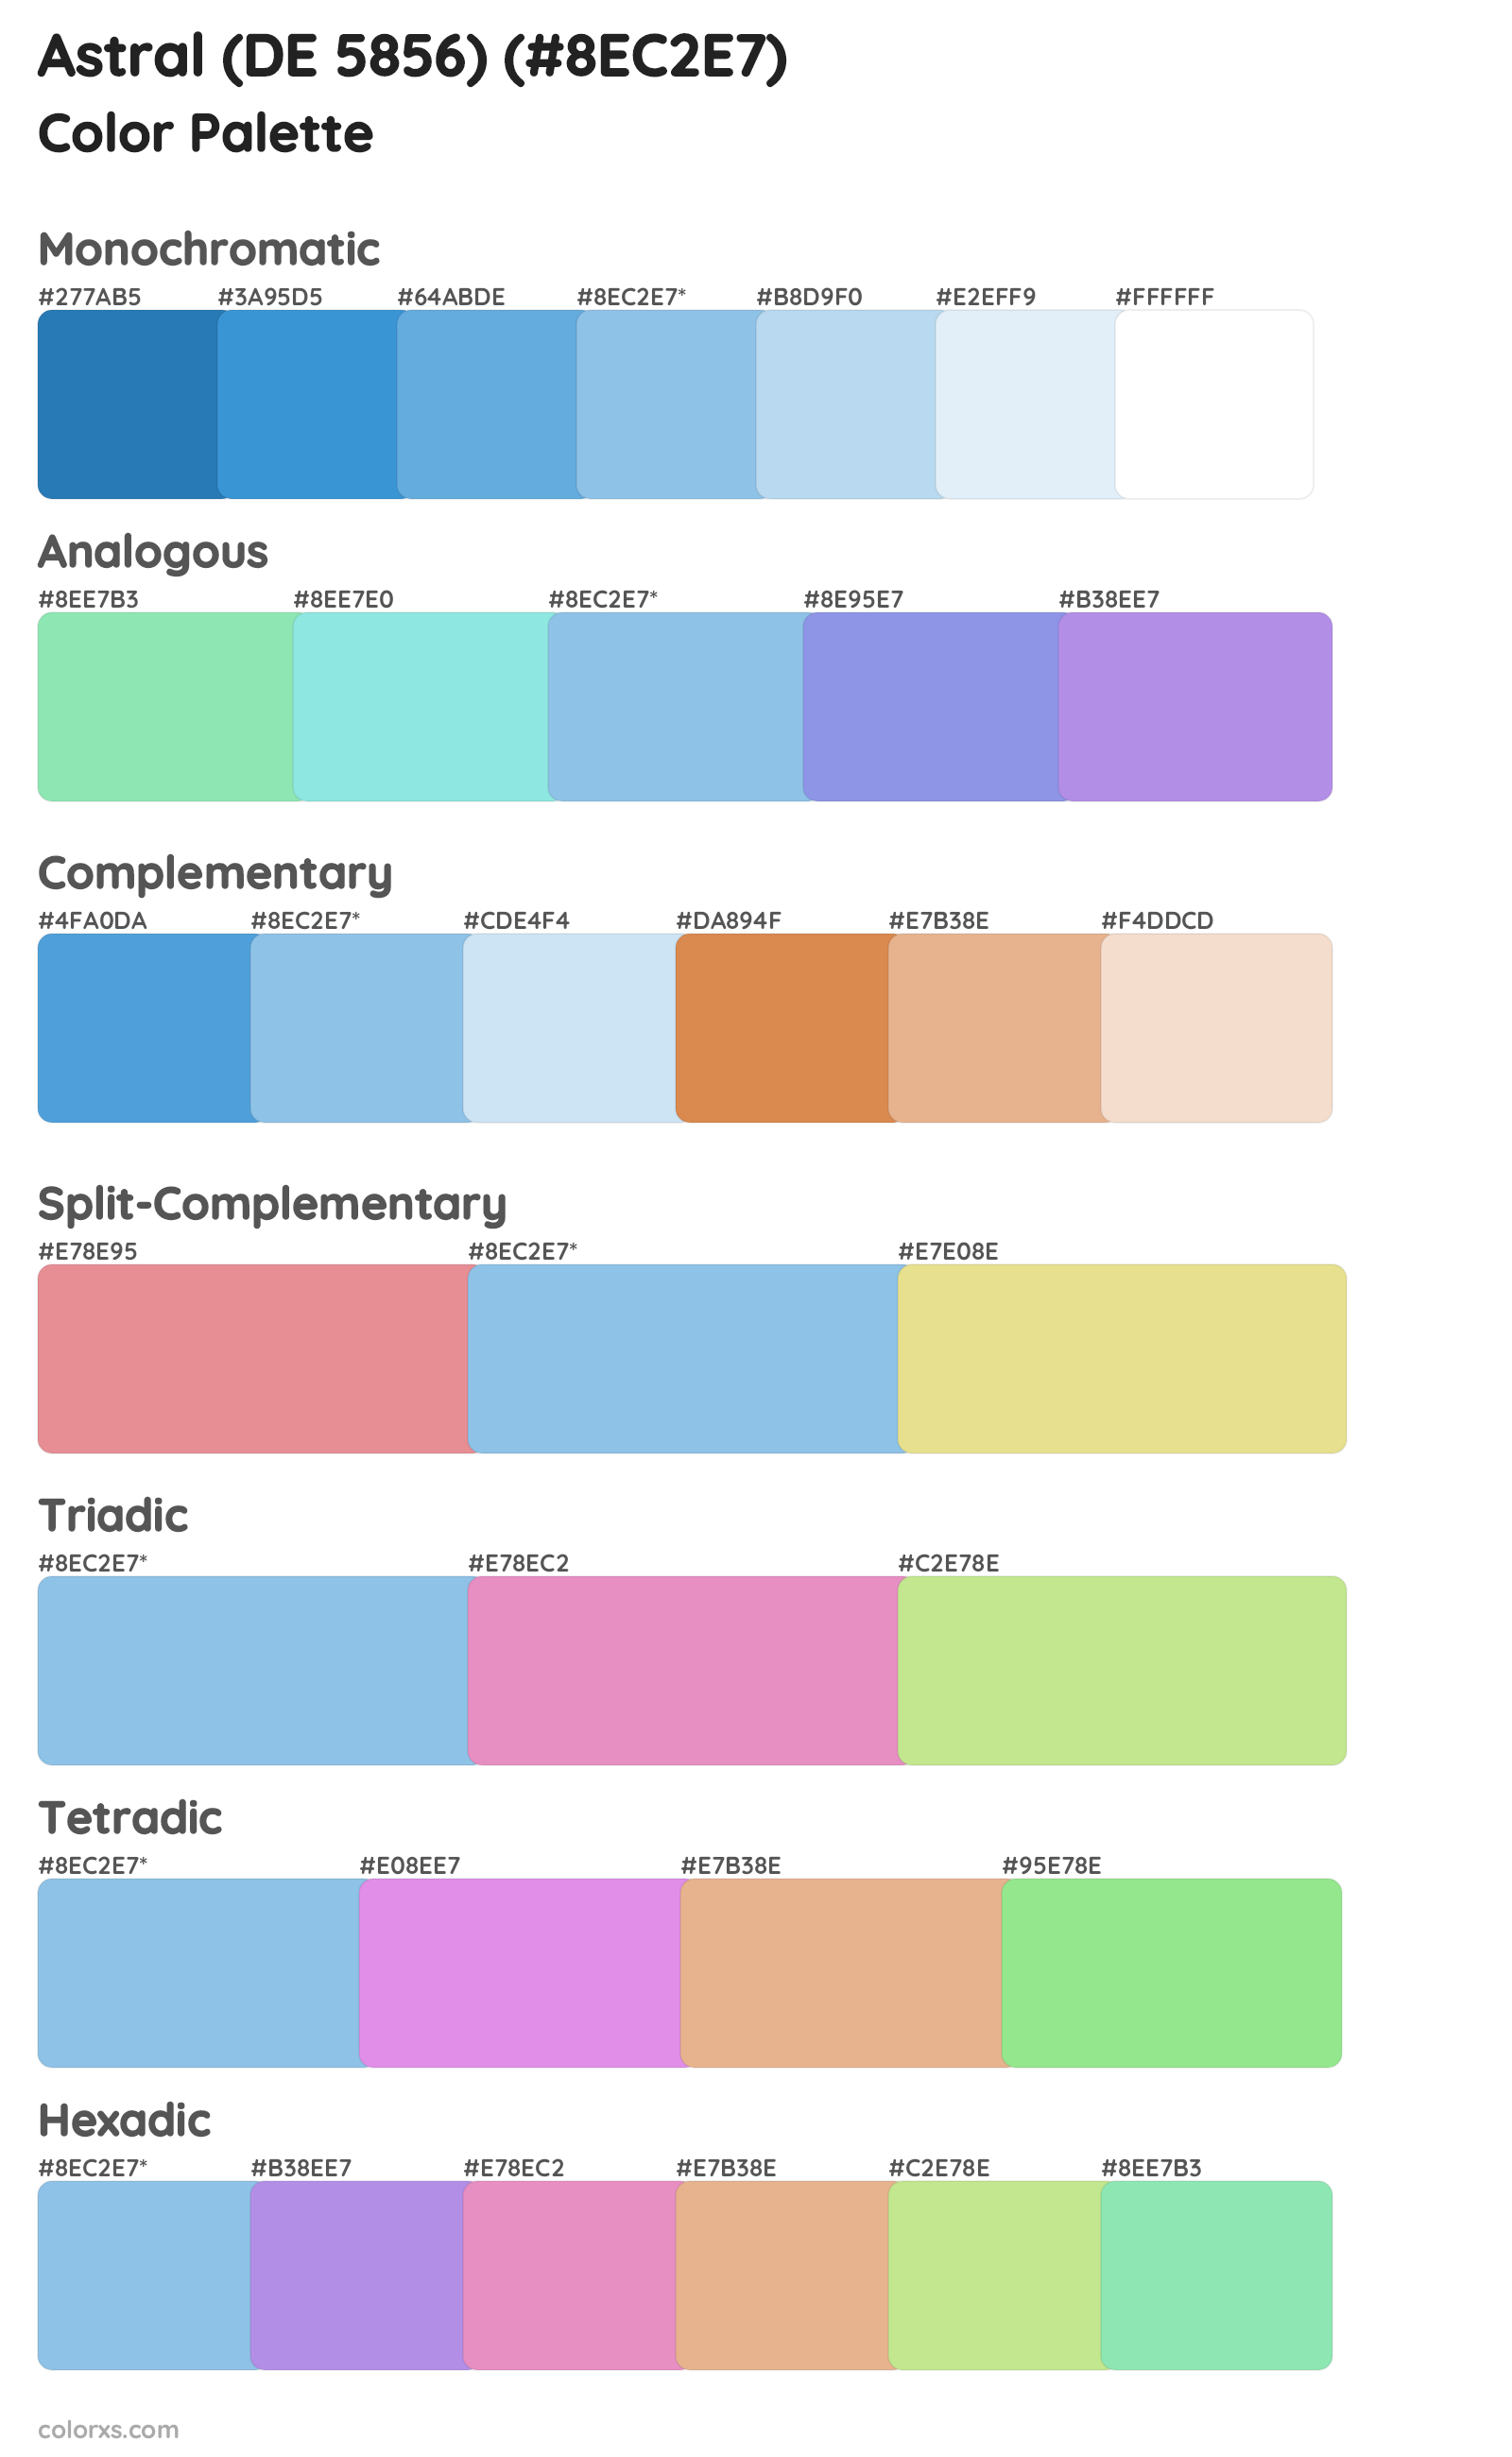 Astral (DE 5856) Color Scheme Palettes